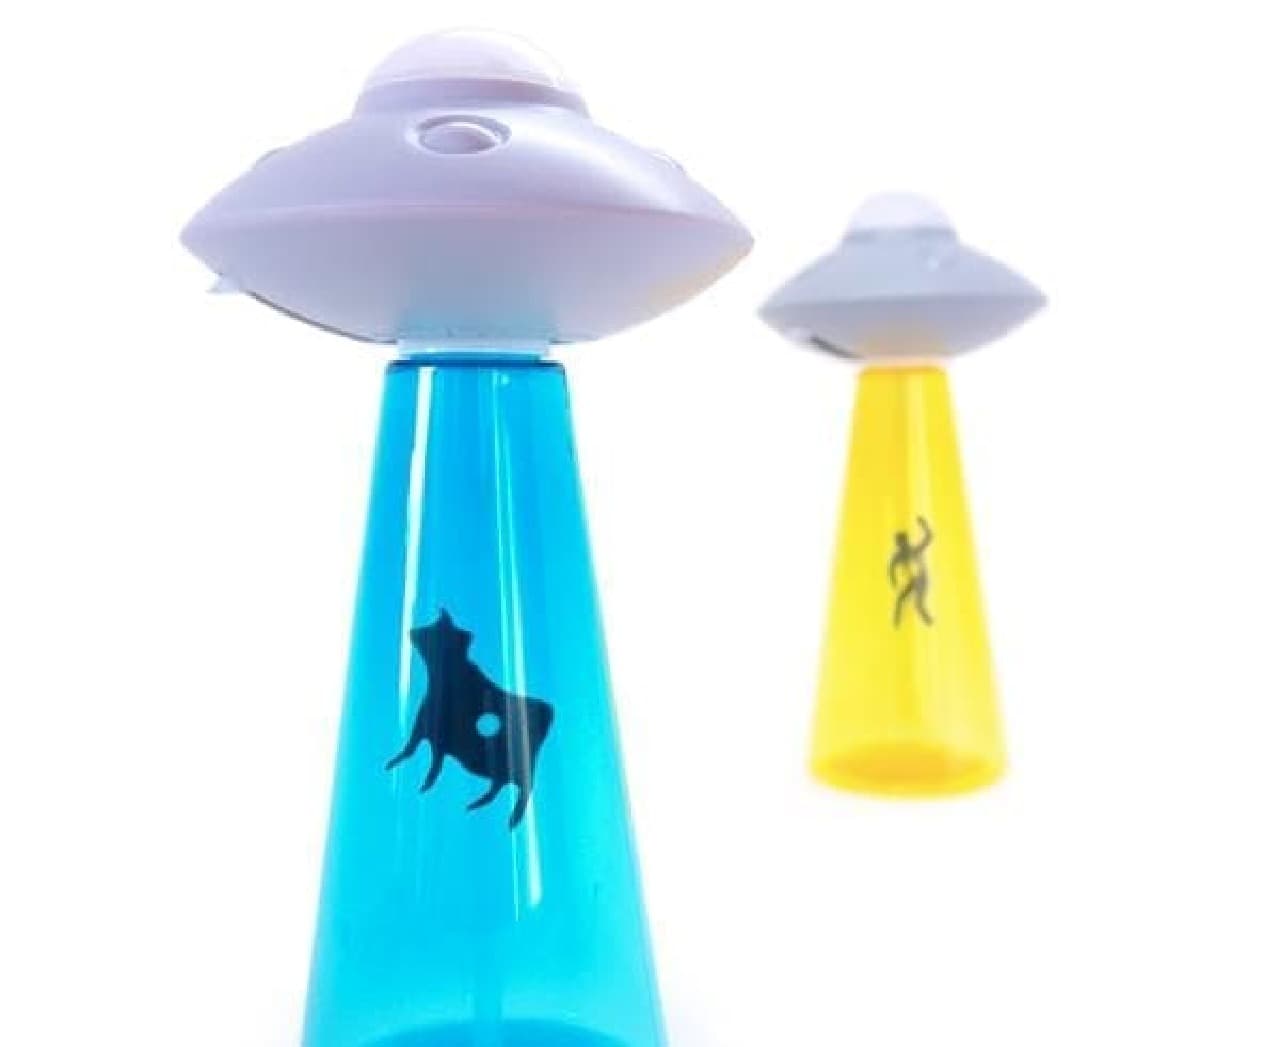 ポンプが UFO 型のソープディスペンサー「U.F.O soap pump」